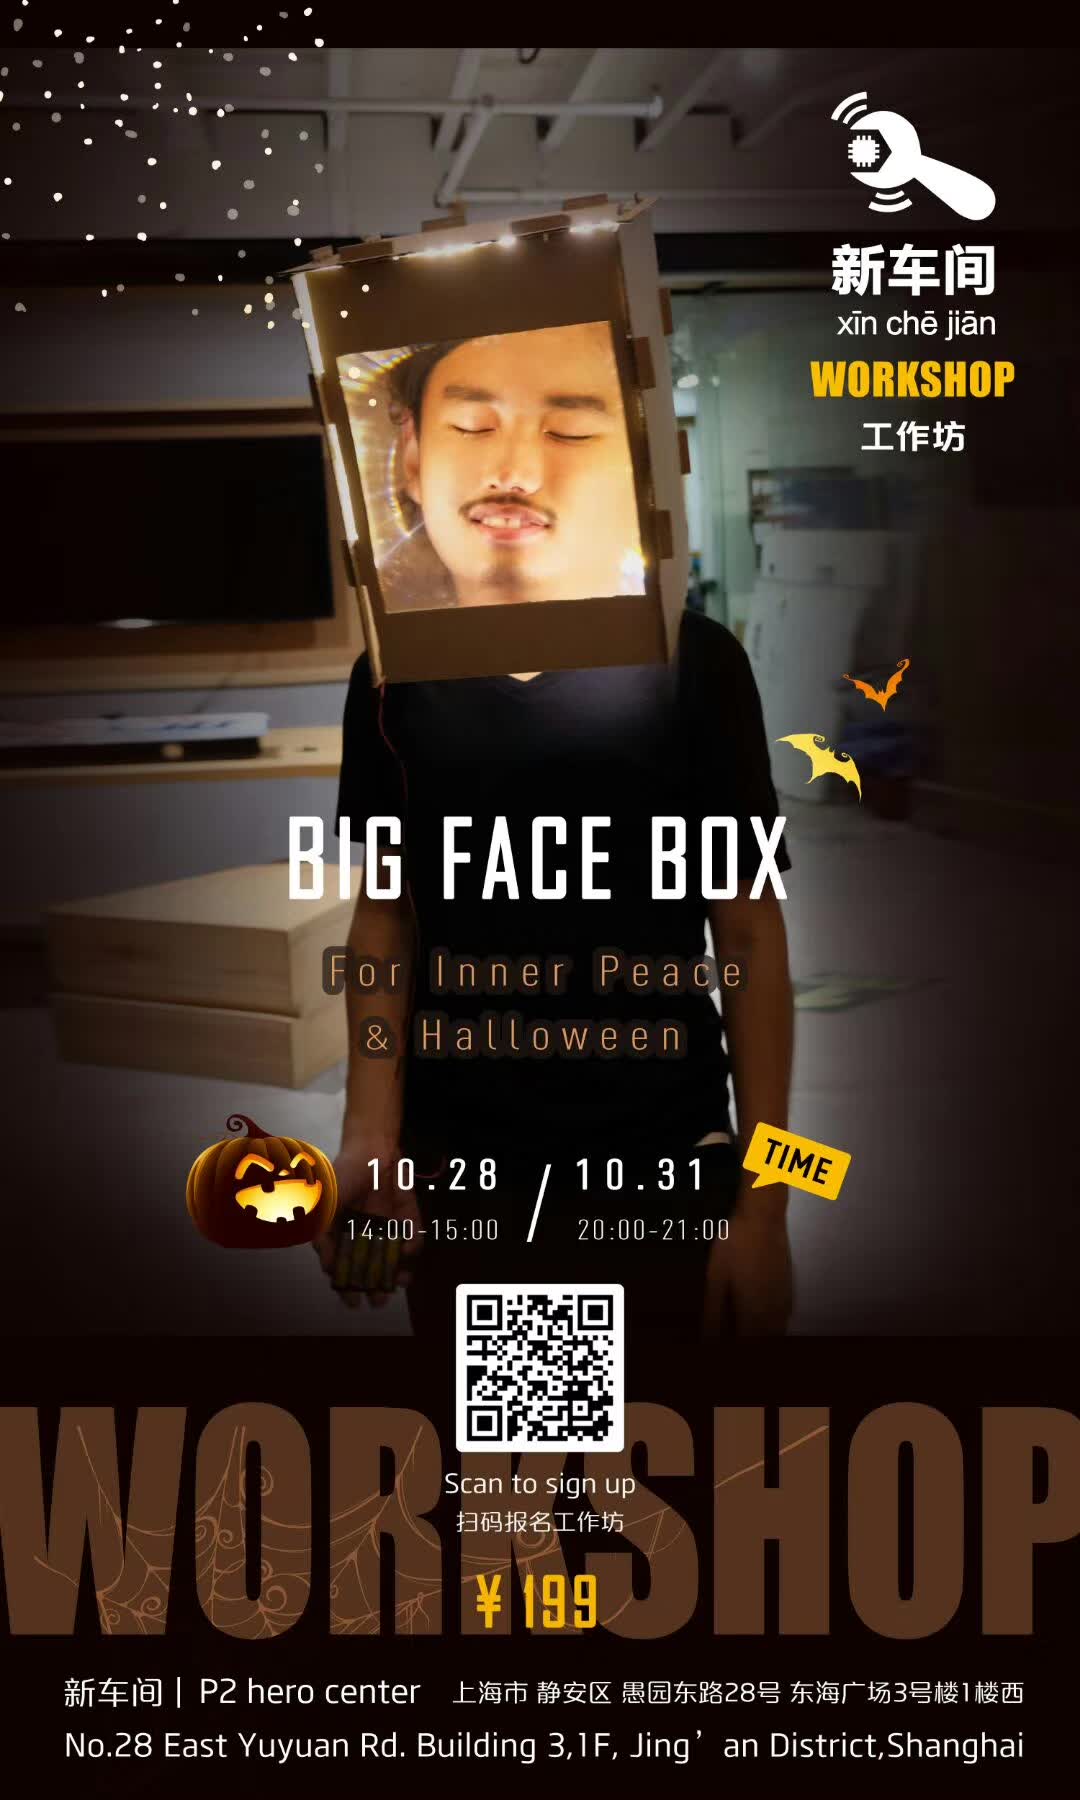 Big Face Box workshop poster